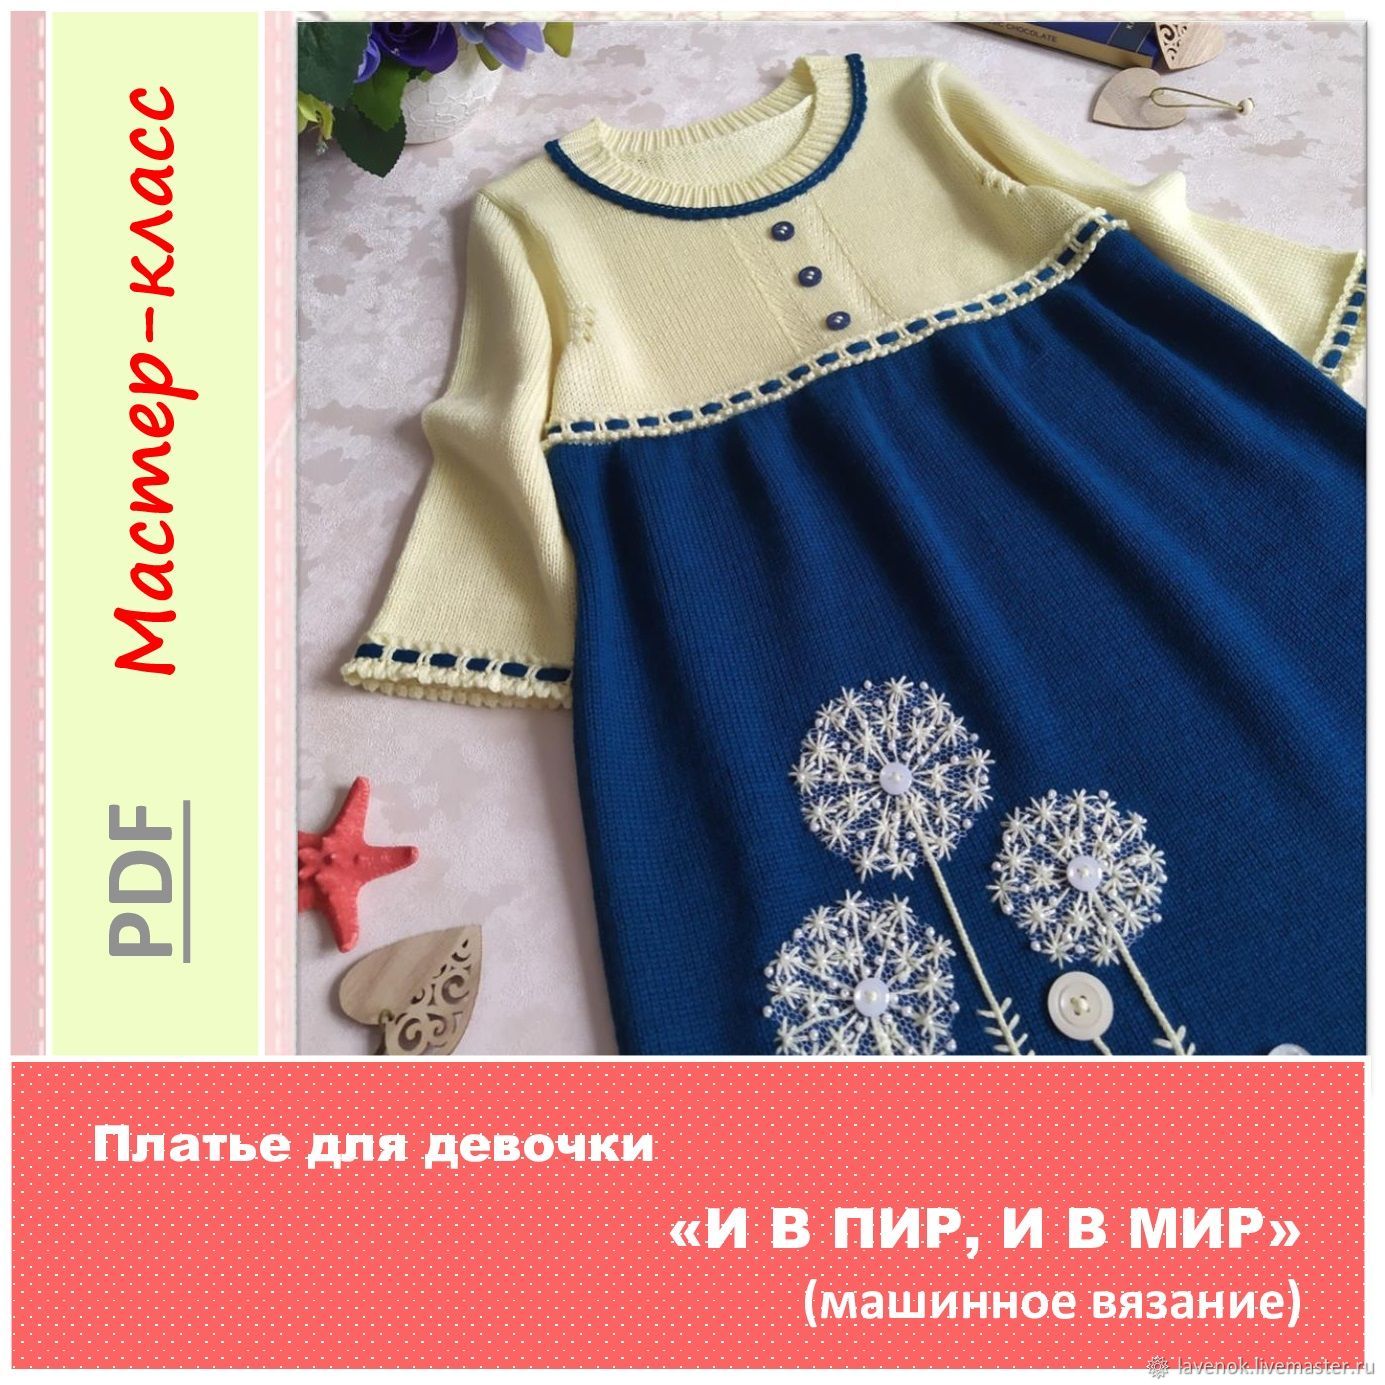 Вязаное крючком платье для девочки 1-1,5 лет. Мастер класс